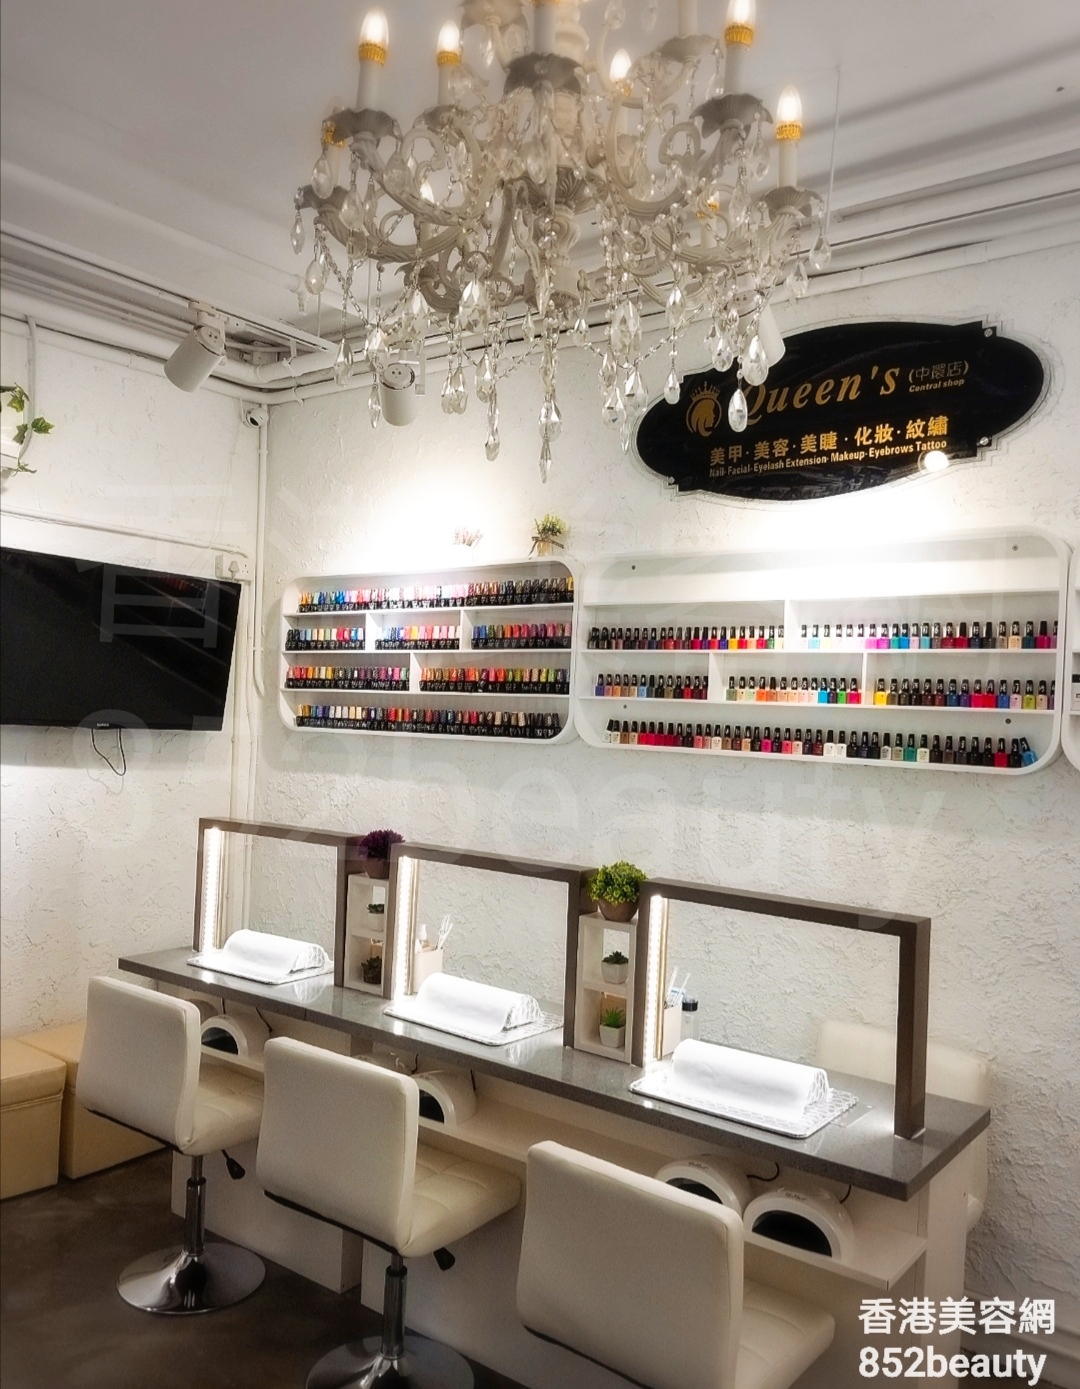 美容院 Beauty Salon: Queen’s Nail 美容美睫紋繡專門店 (中環店)